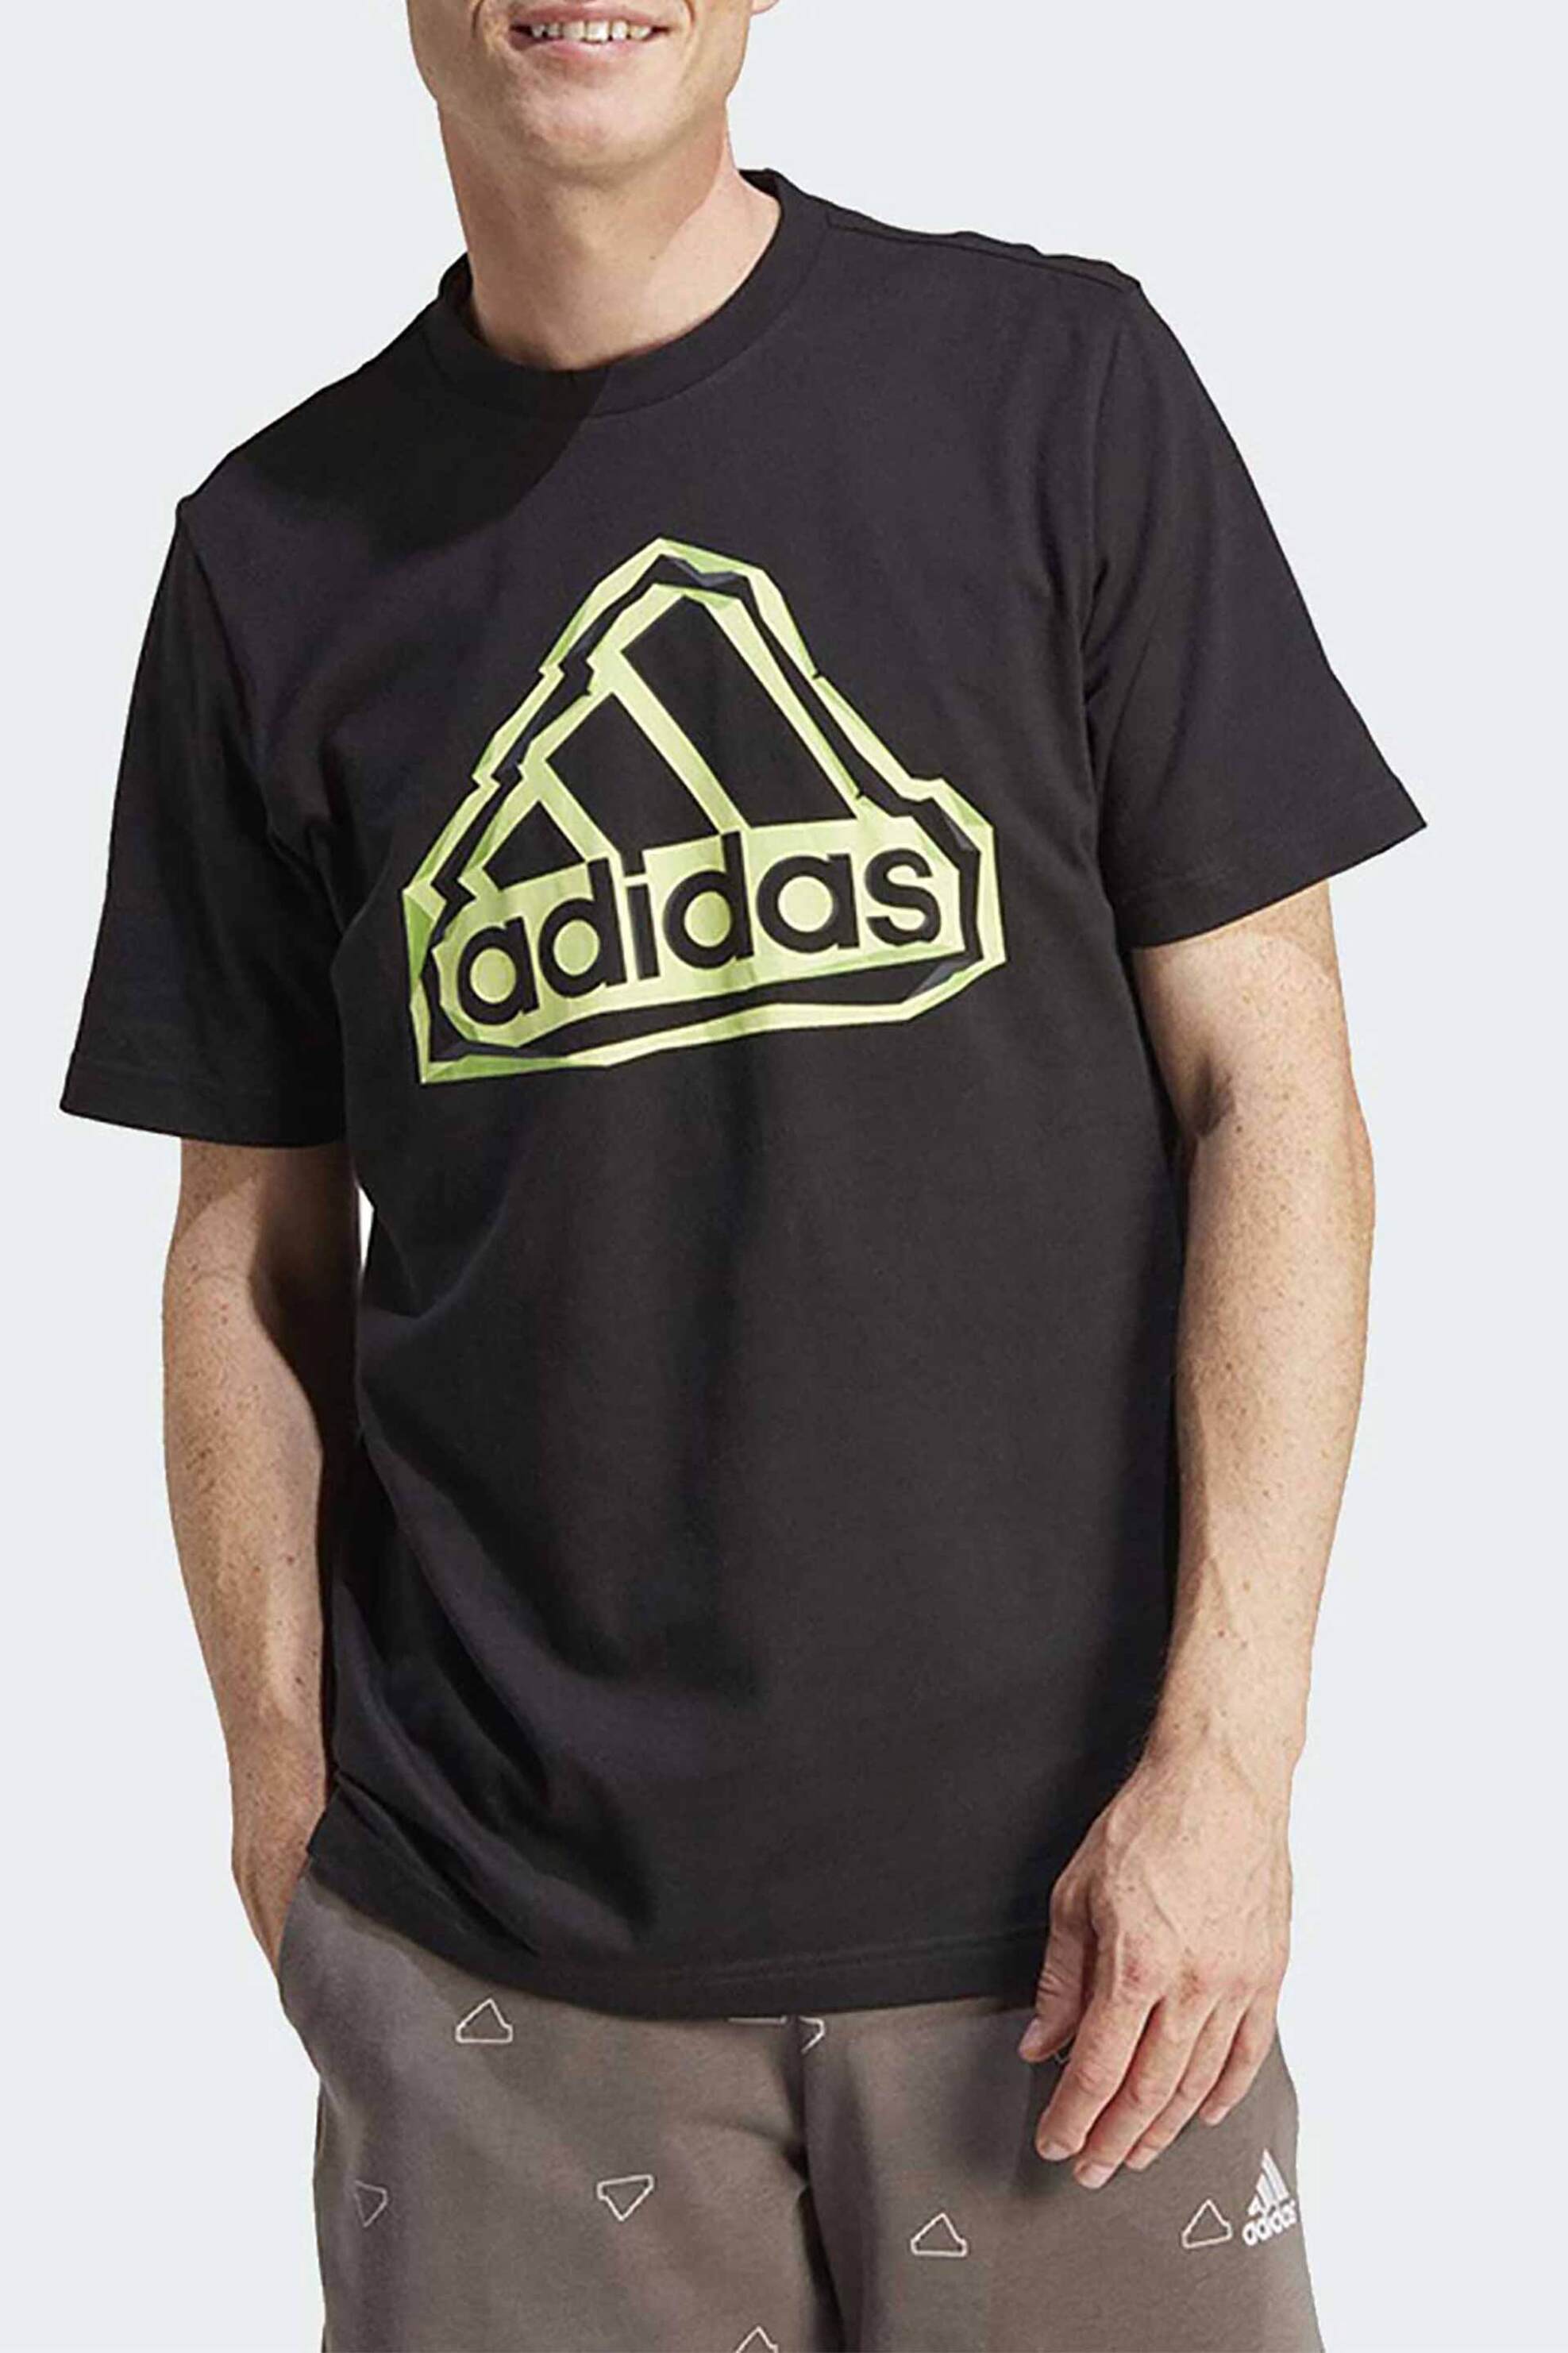 Άνδρας > ΑΘΛΗΤΙΚΑ > Αθλητικά Ρούχα > Αθλητικές Μπλούζες > Αθλητικά T-Shirts Adidas ανδρικό T-shirt με contrast logo στο στήθος - IM8300 Μαύρο